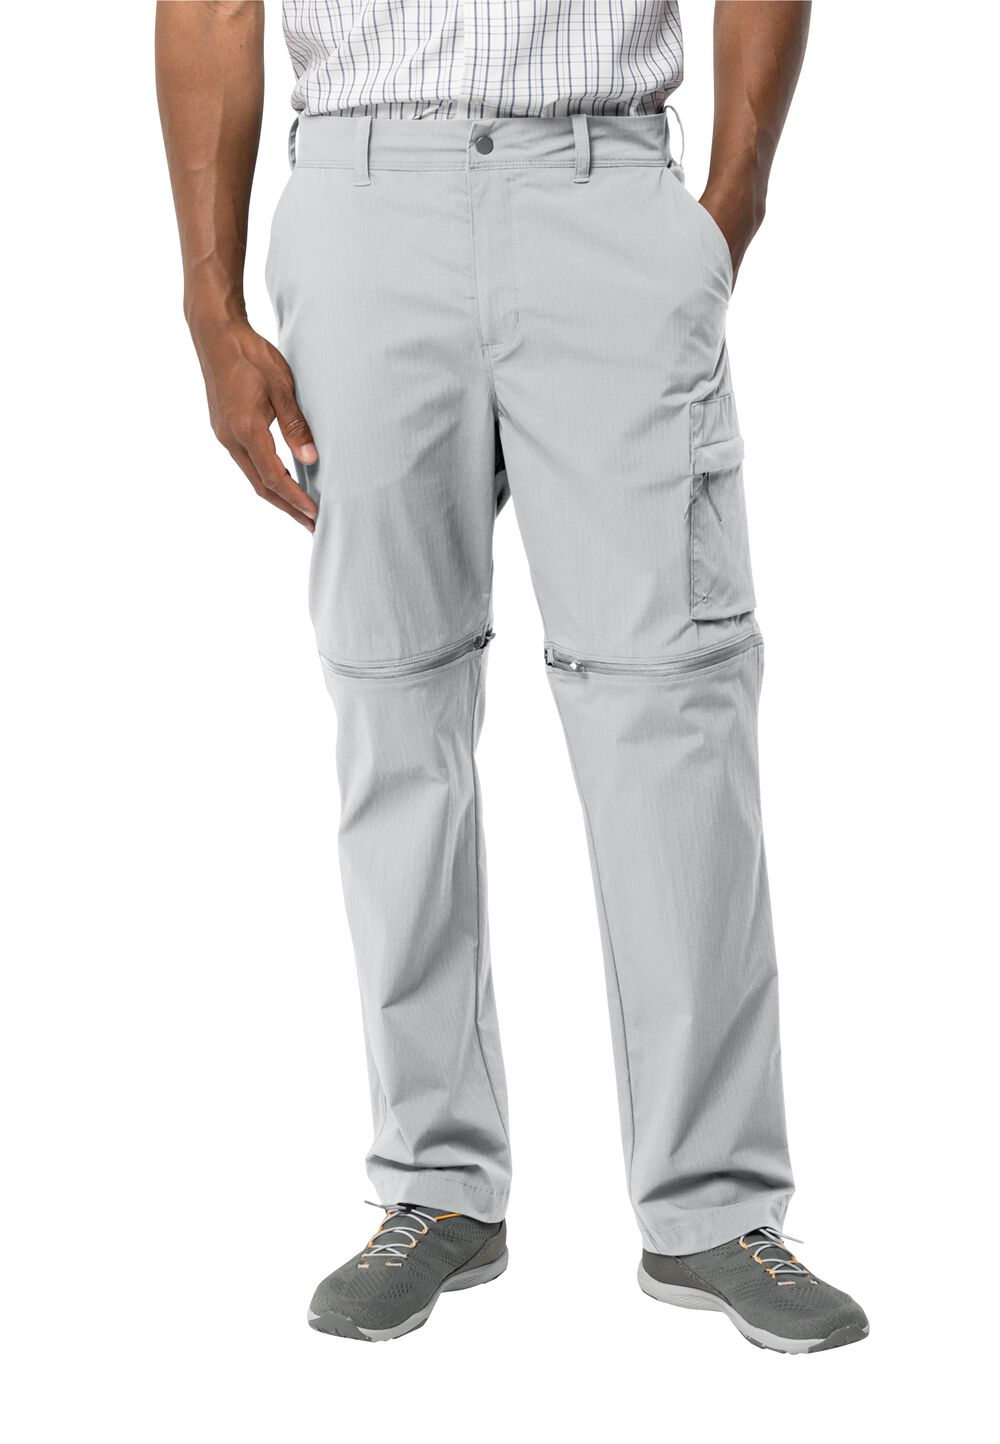 Jack Wolfskin Wanderthirst Zip Pants Men Zip-Off-broek Heren 52 grijs cool grey